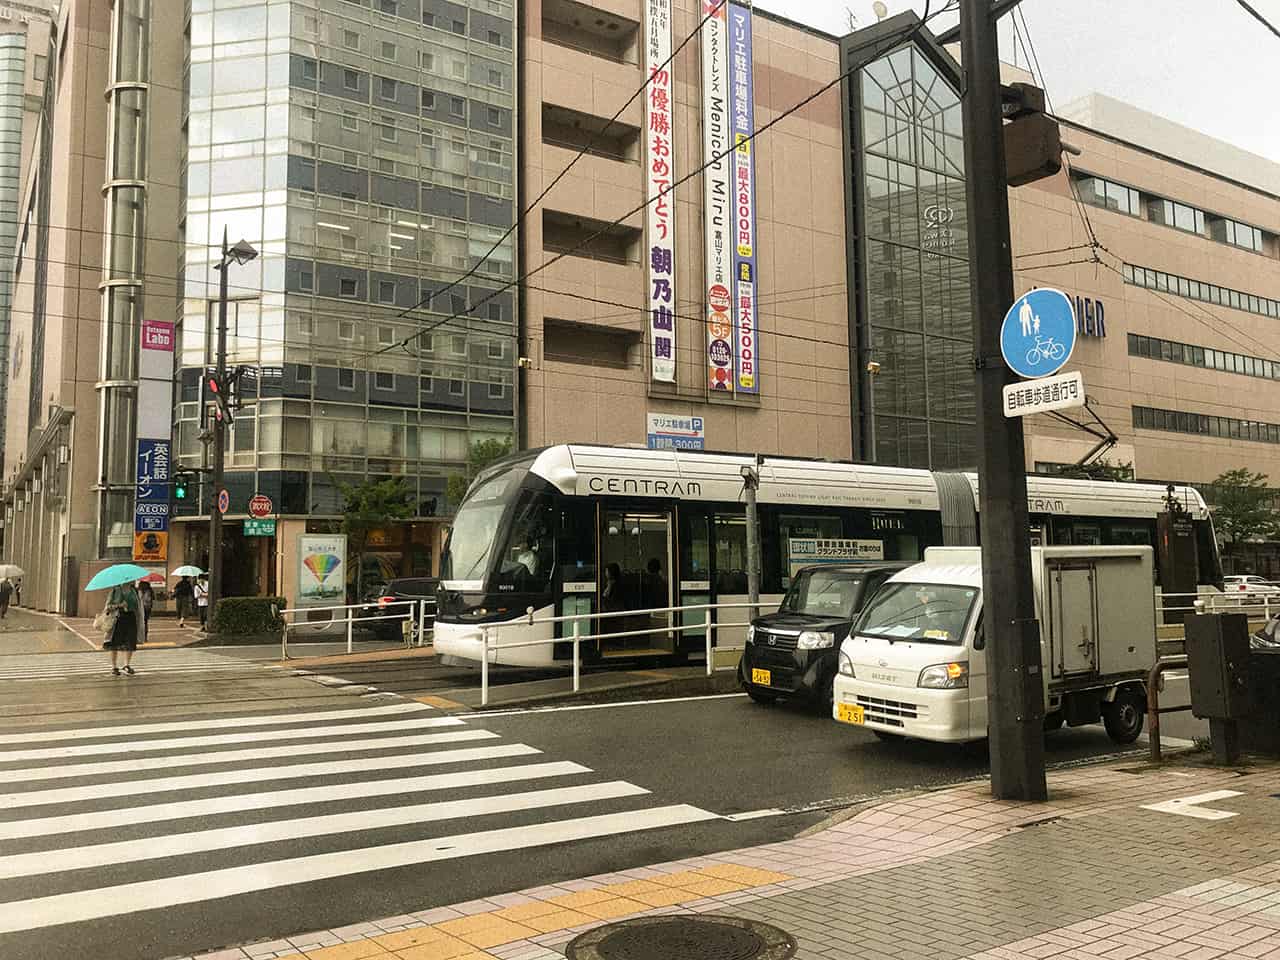 Centram รถรางสาธารณะของจังหวัดโทยามะ (Toyama)